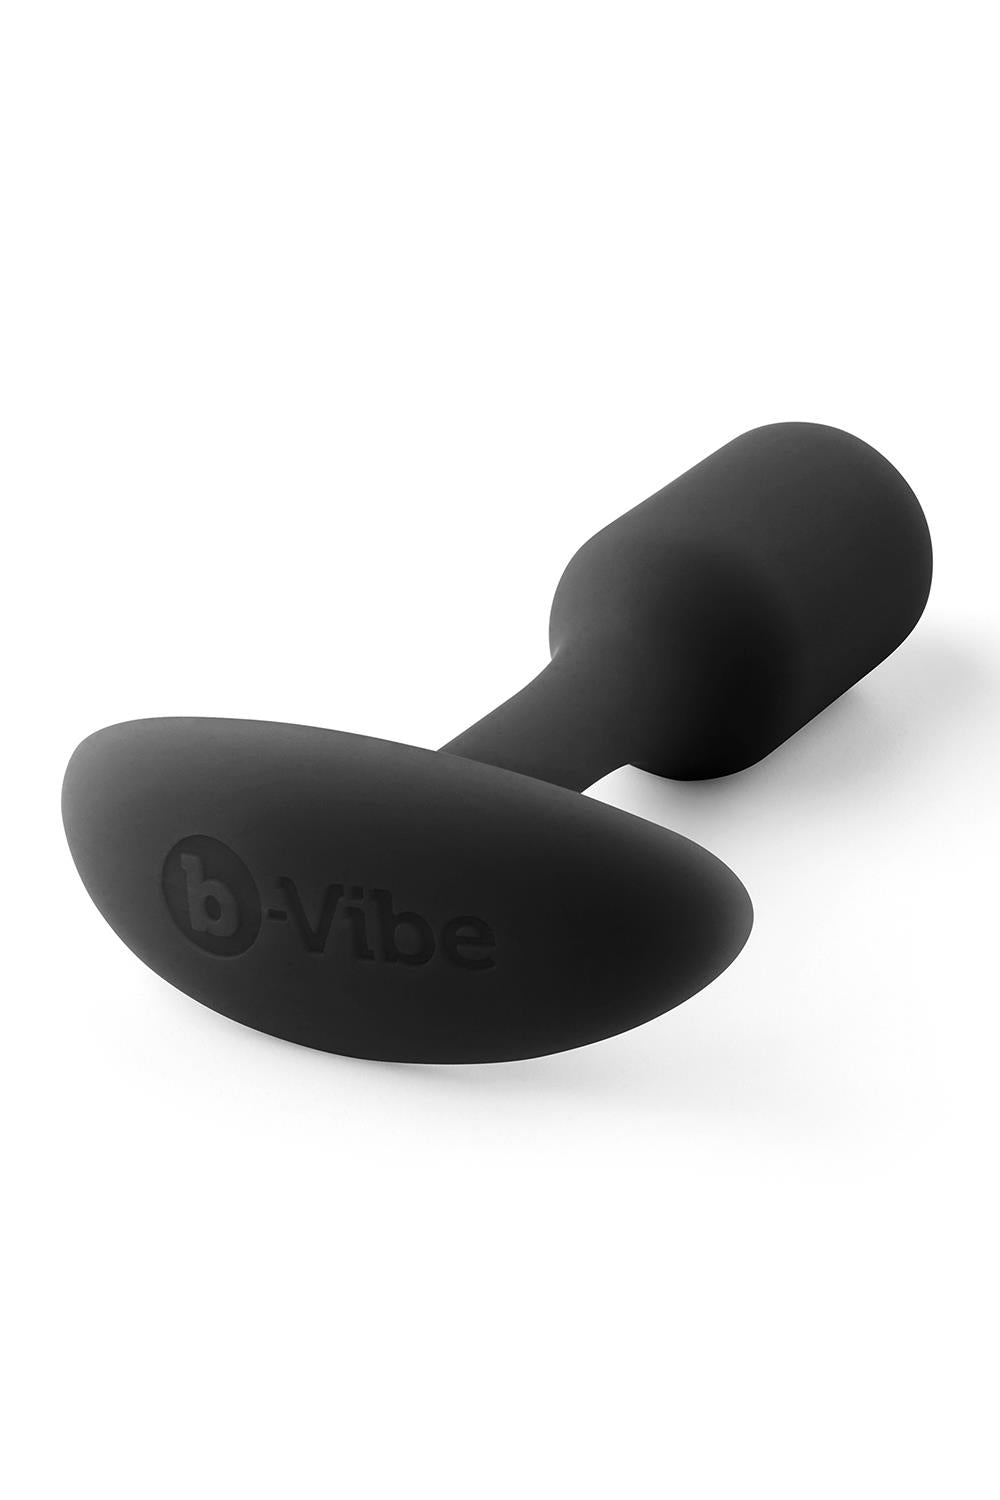 B-vibe Snug Plug 1 Black